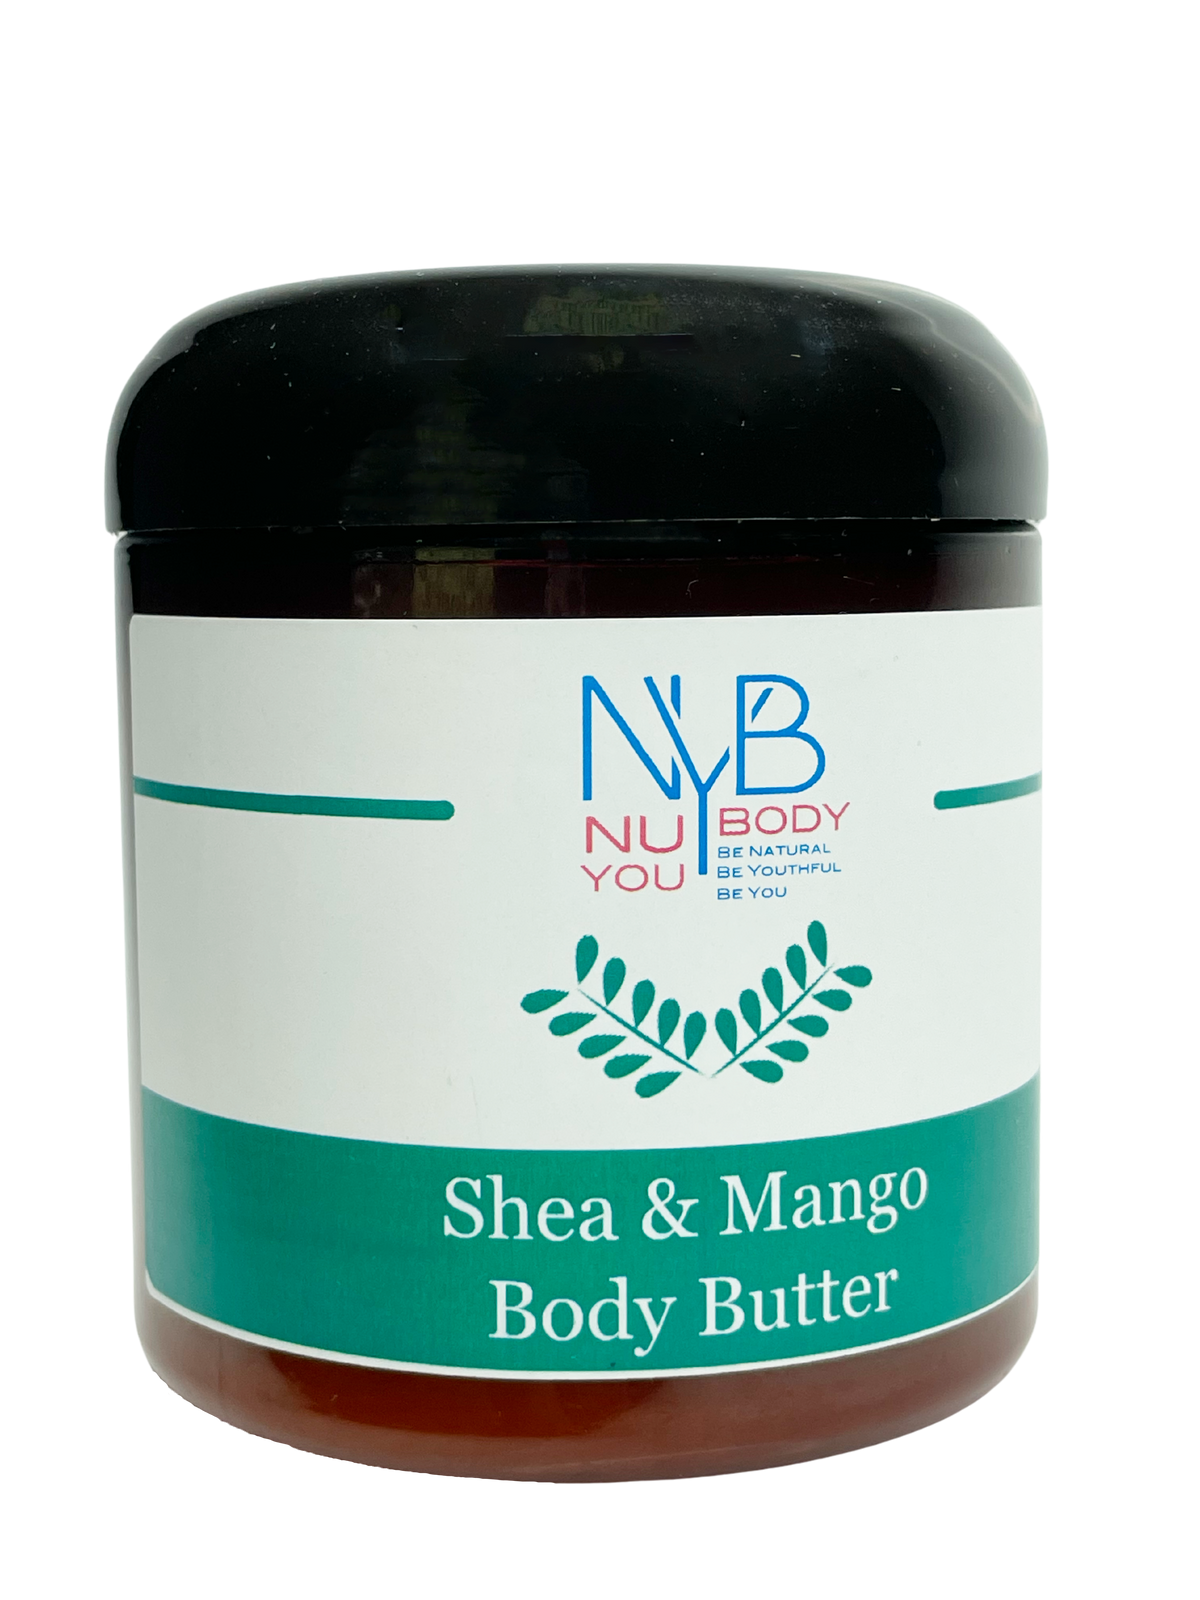 Shea & Mango Body Butter